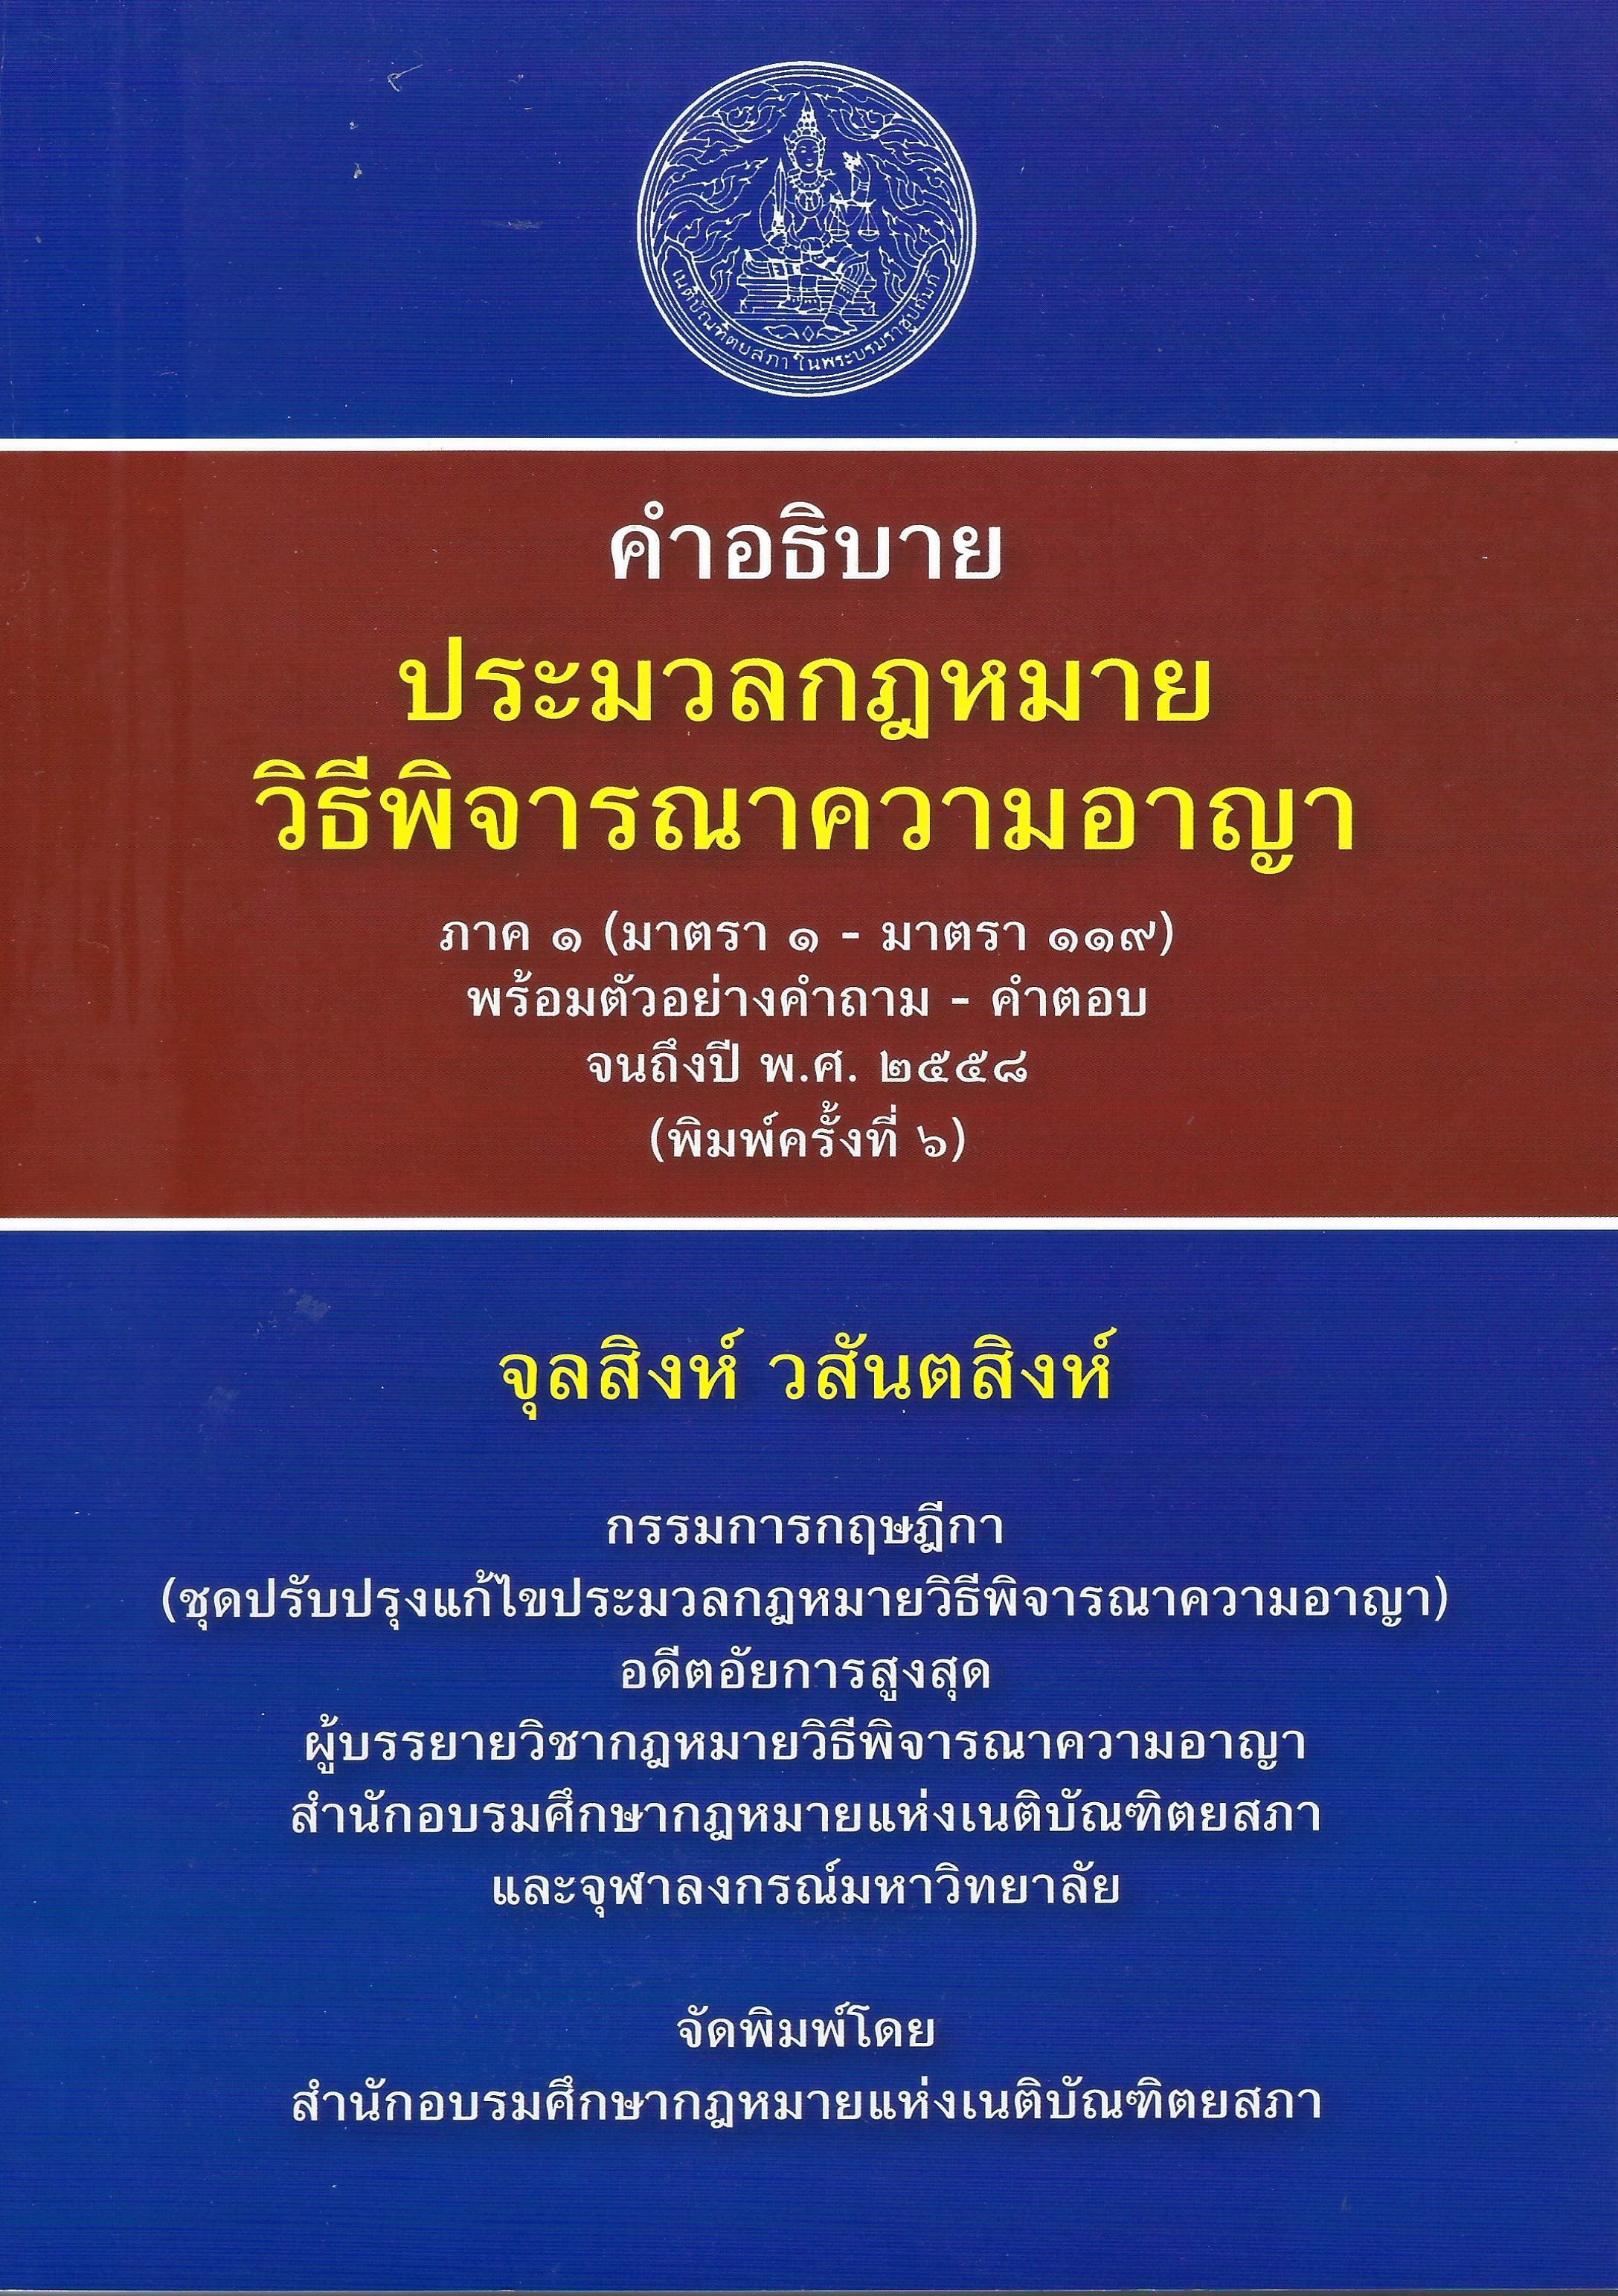 เนติบัณฑิตยสภา ในพระบรมราชูปถัมภ์ | The Thai Bar Under The Royal Patronage